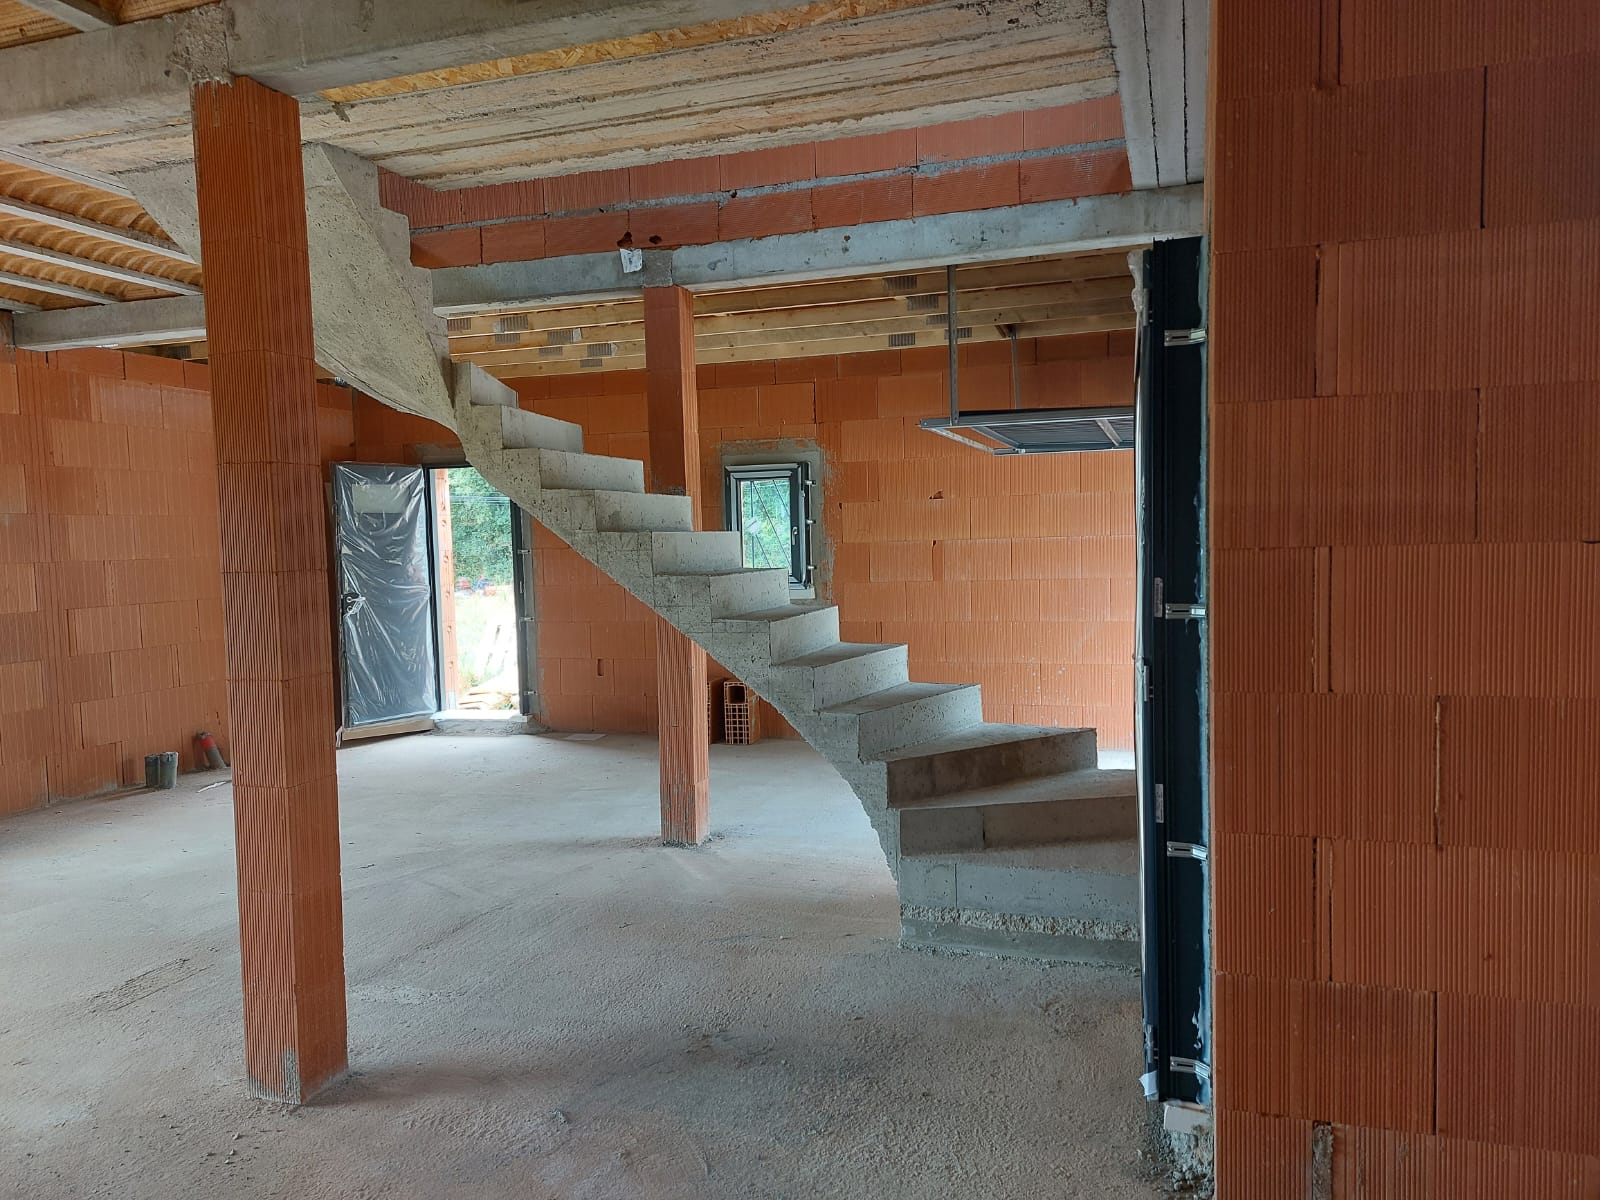 Escalier à paillasse situé près de Saint-Alban et Fenouillet, département du nord de la Haute-Garonne. Matériau plein, minimaliste et silencieux.